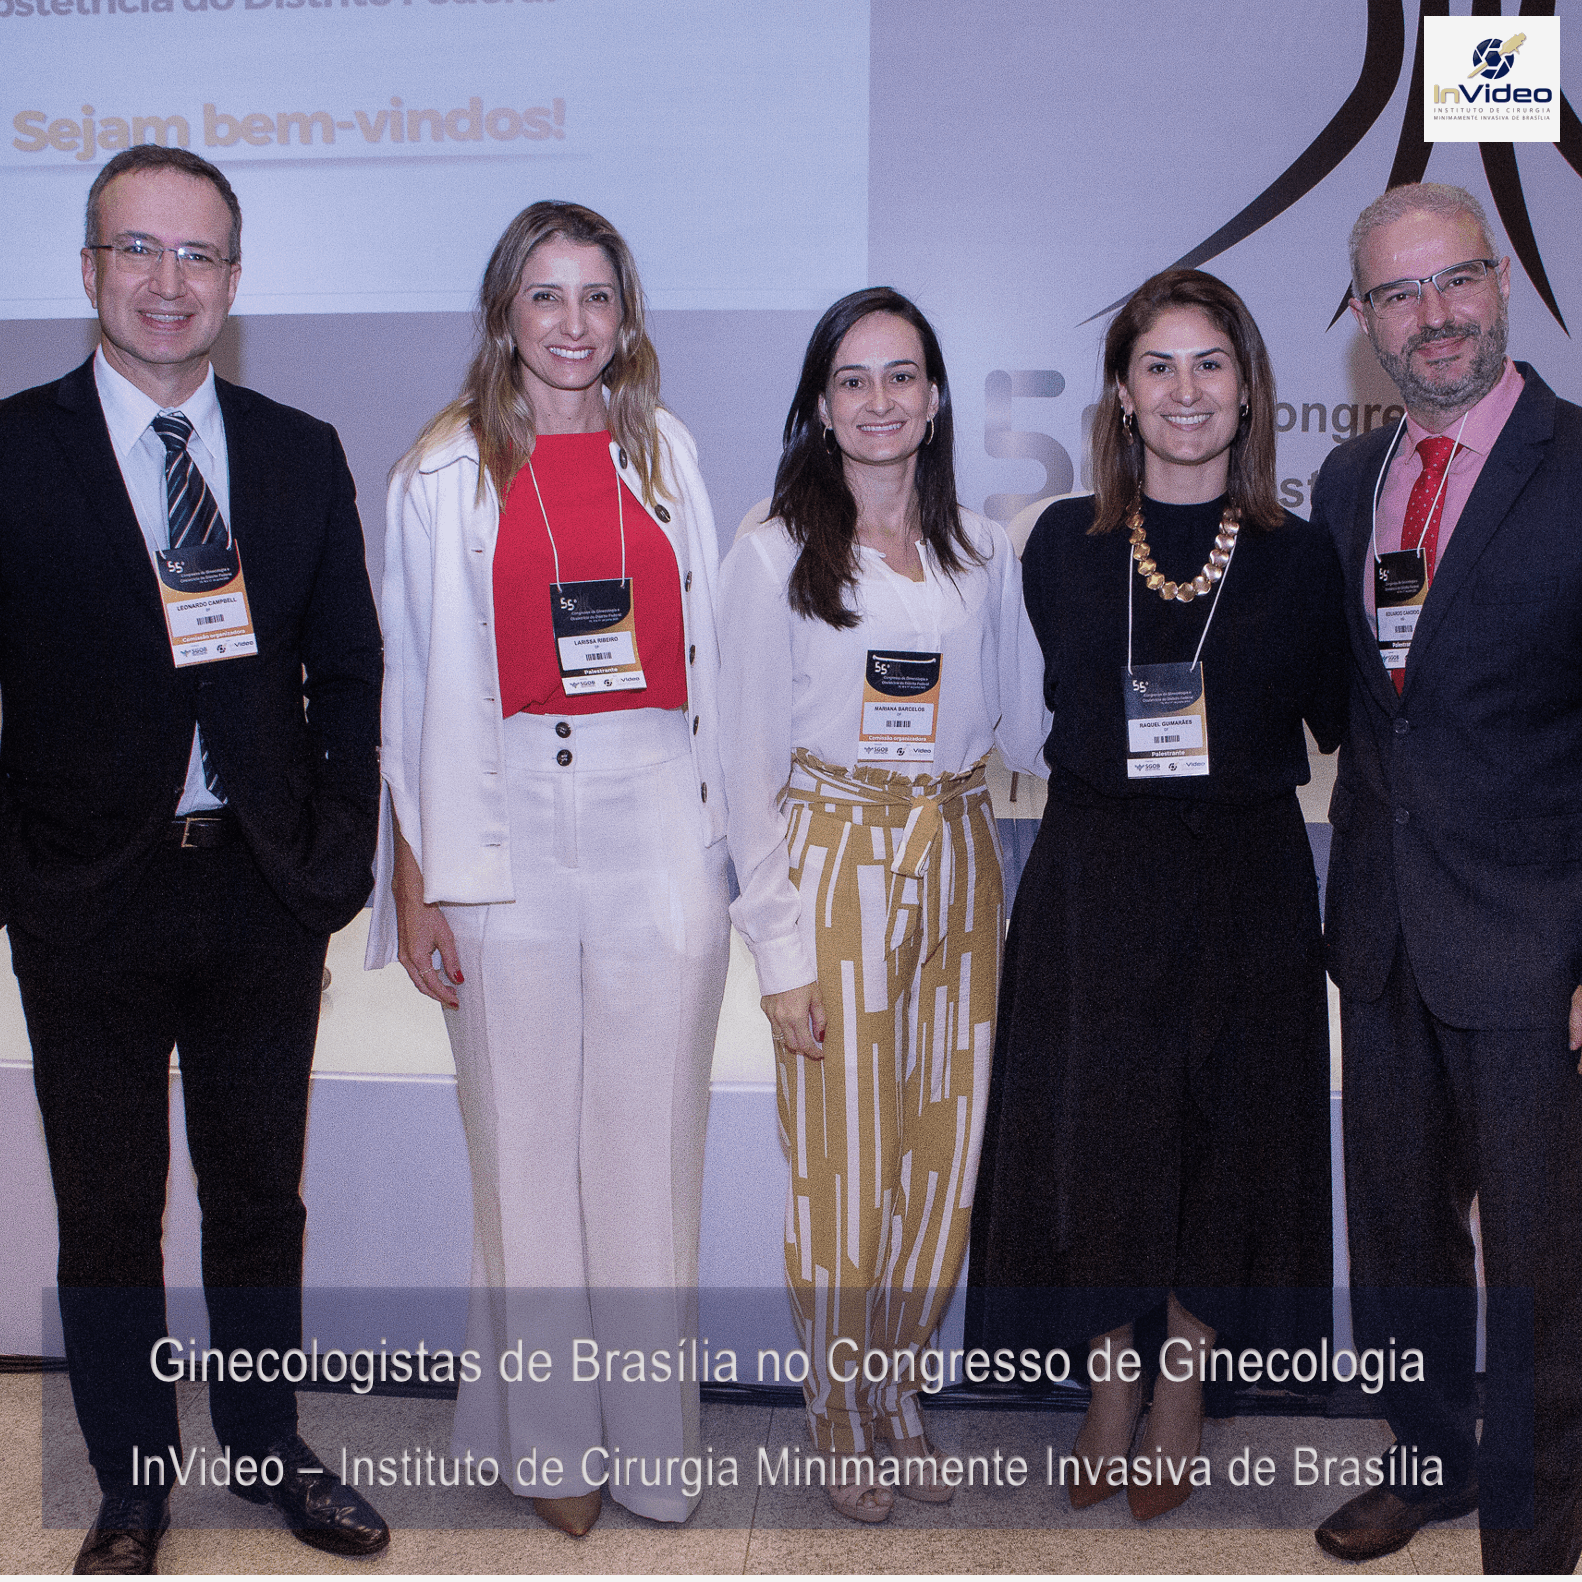 Dr Leonardo Campbell e ginecologistas de Brasília no congresso de ginecologia de Brasília 2023 - InVideo